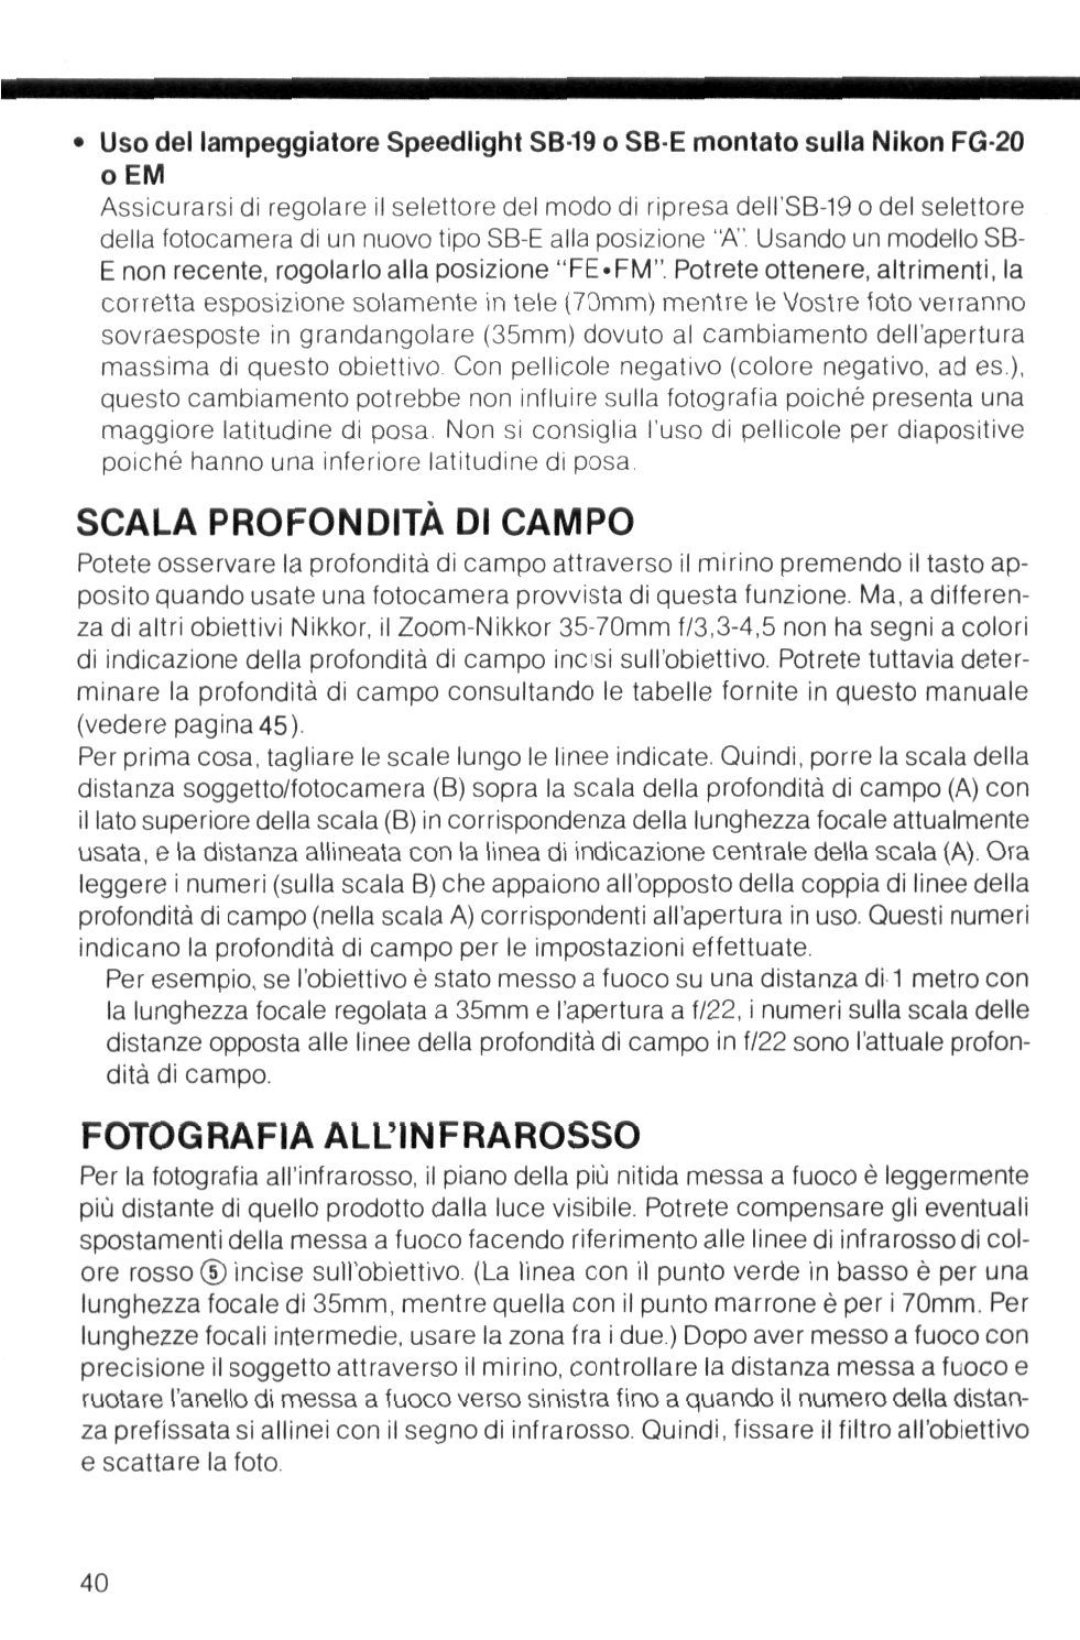 Nikon instruction manual Scala Profondita Di Campo, Fotografia Allinfrarosso 